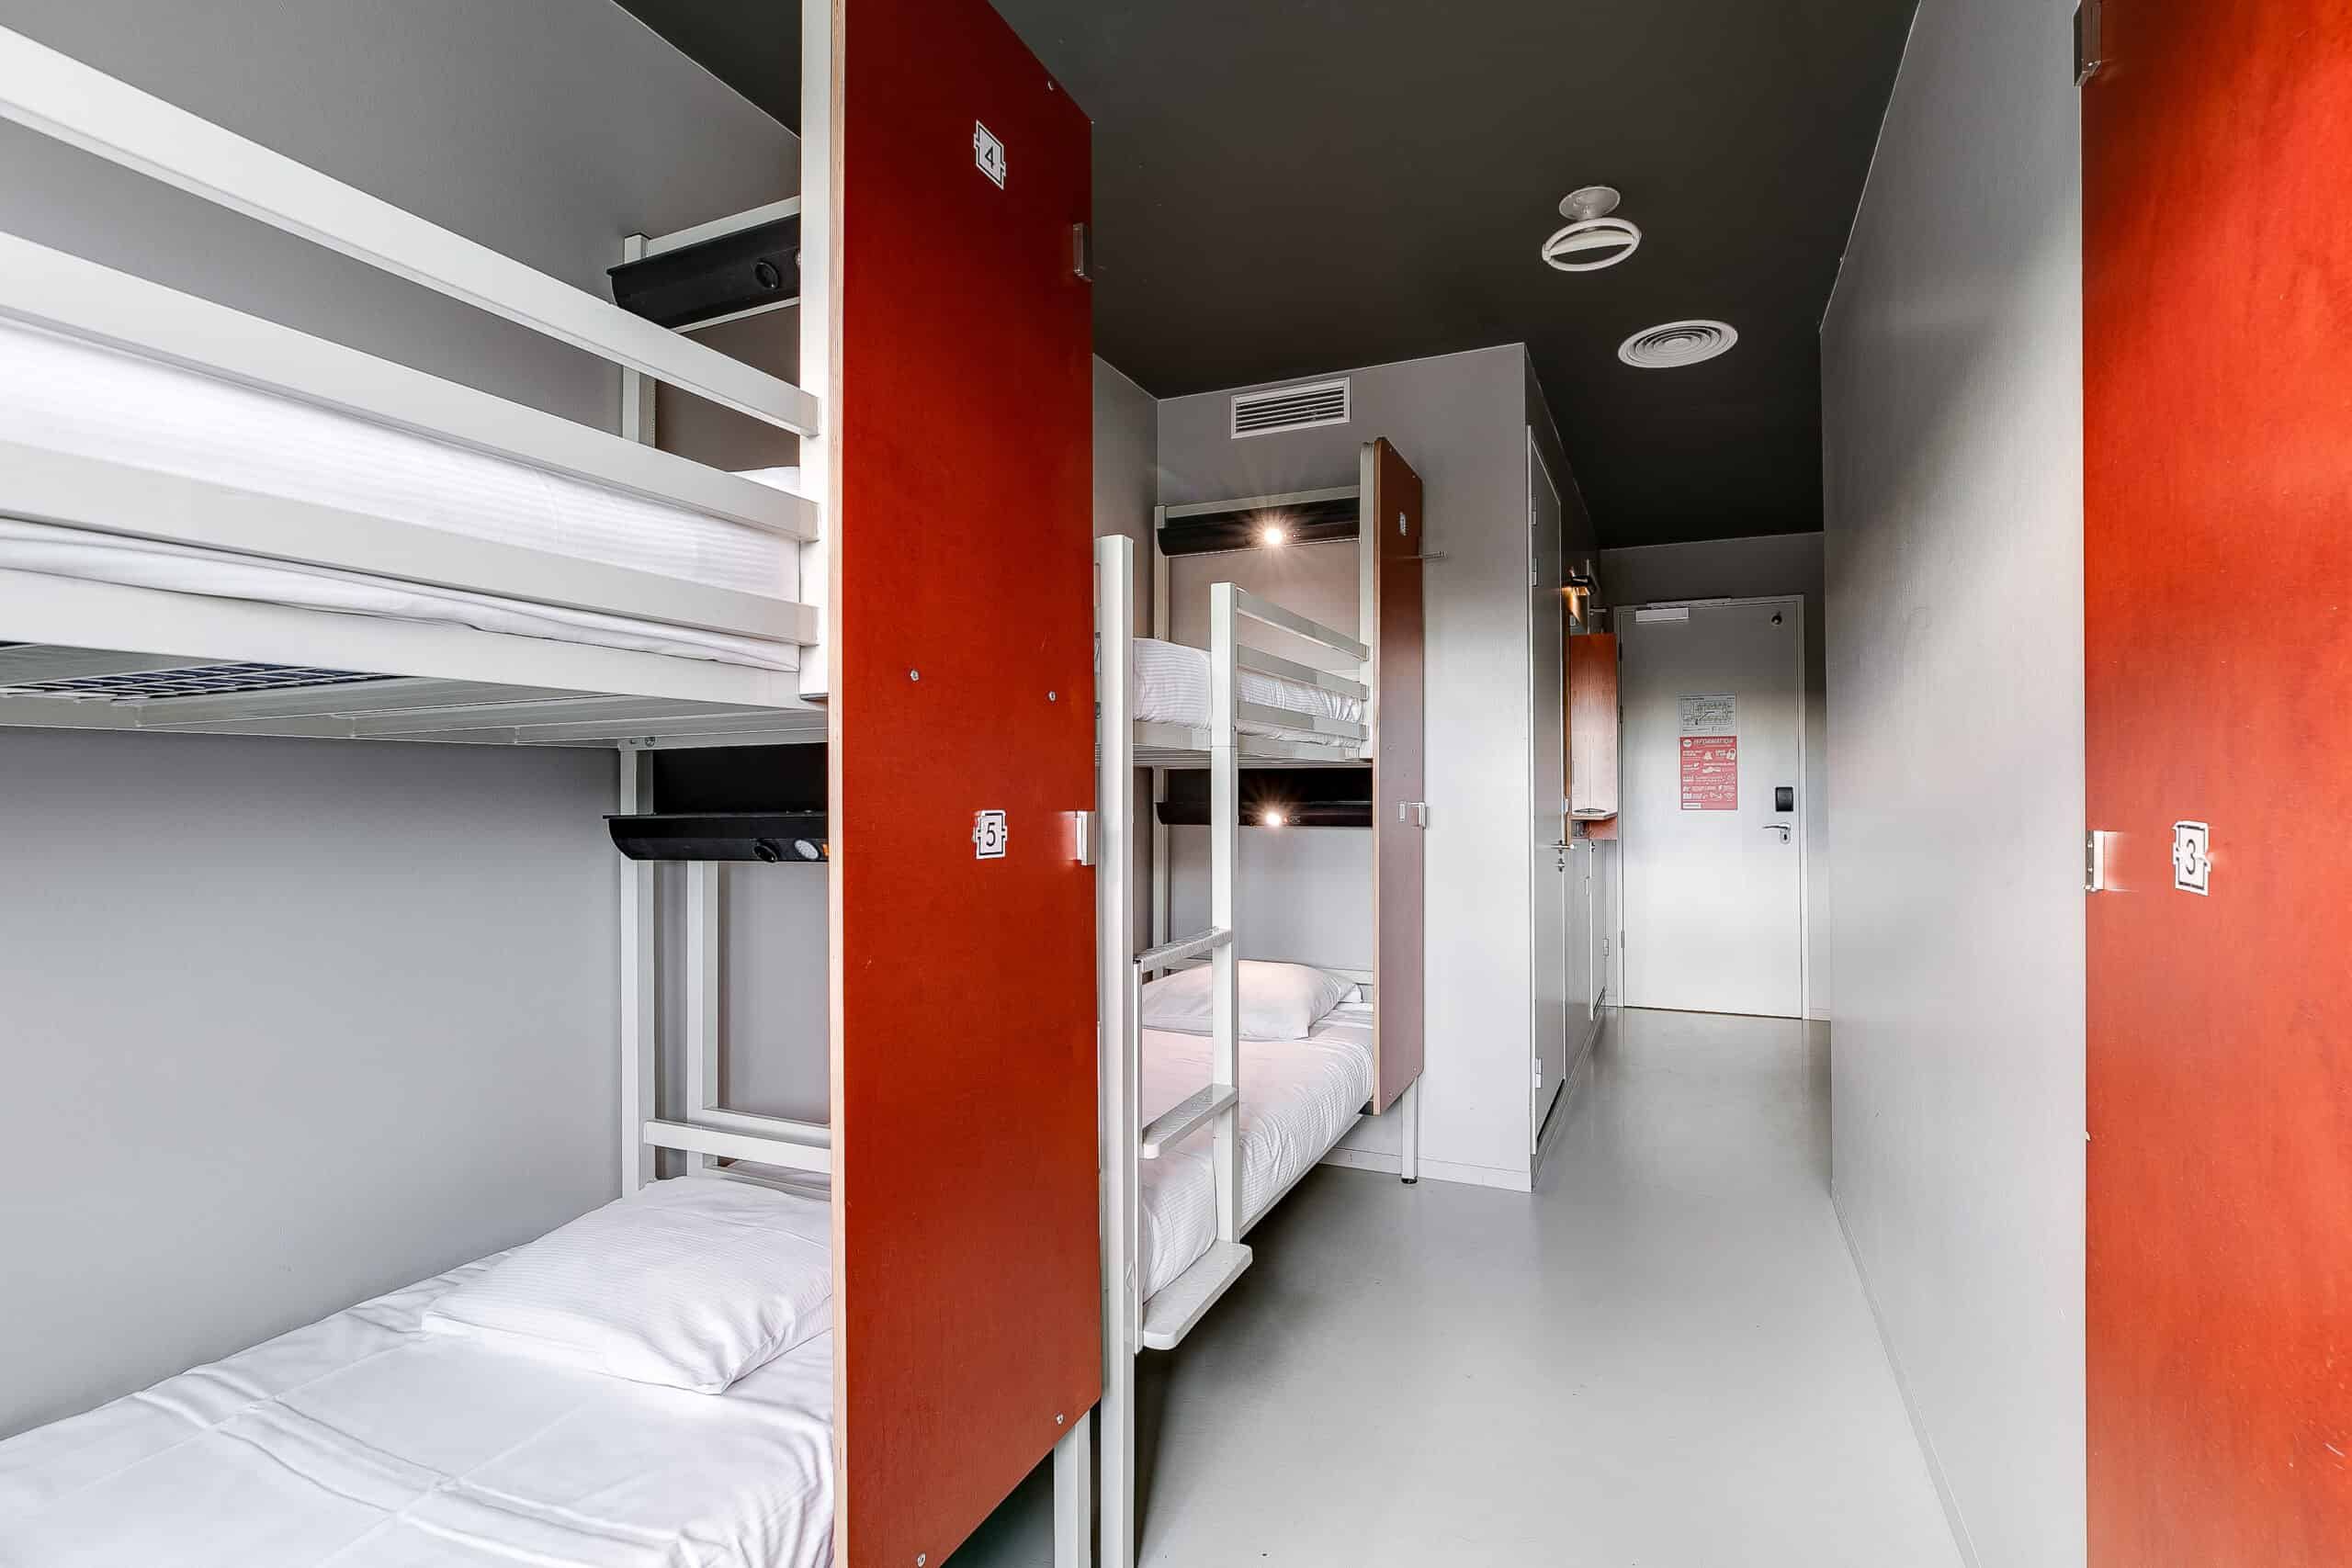 Dormitorio con letti a castello al Clinknoord di Amsterdam